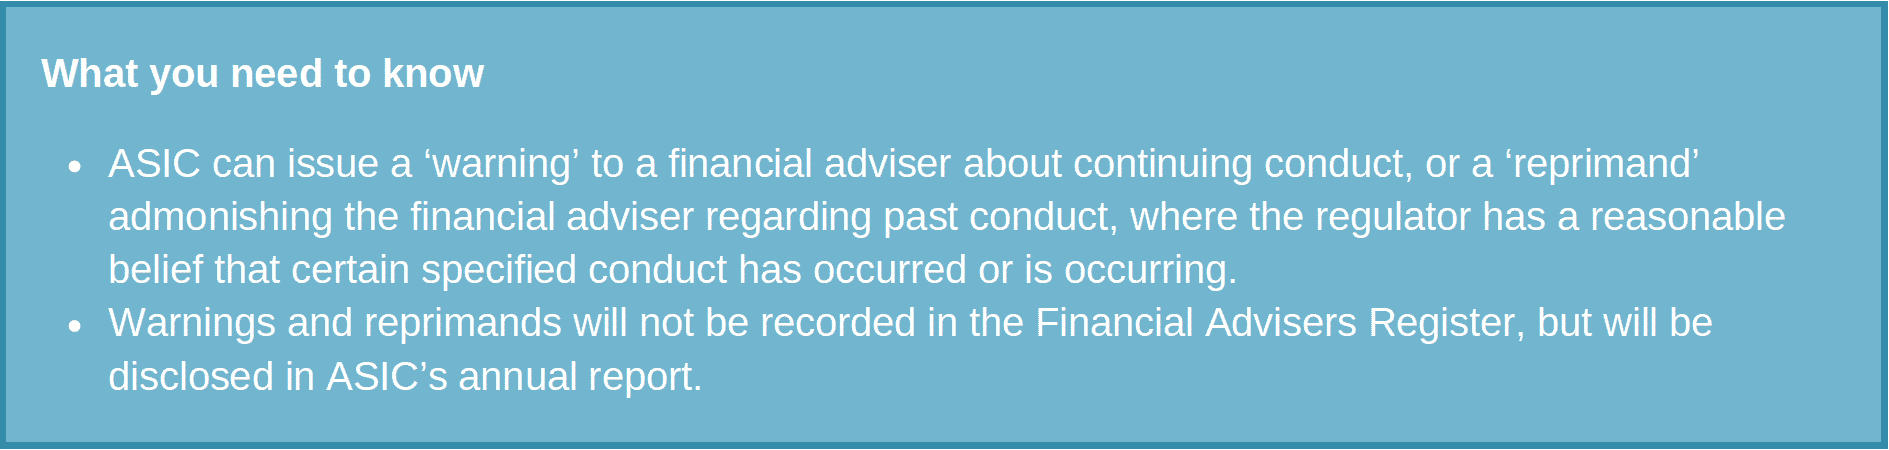 KHQ Lawyers - ASIC admonitions of financial advisors